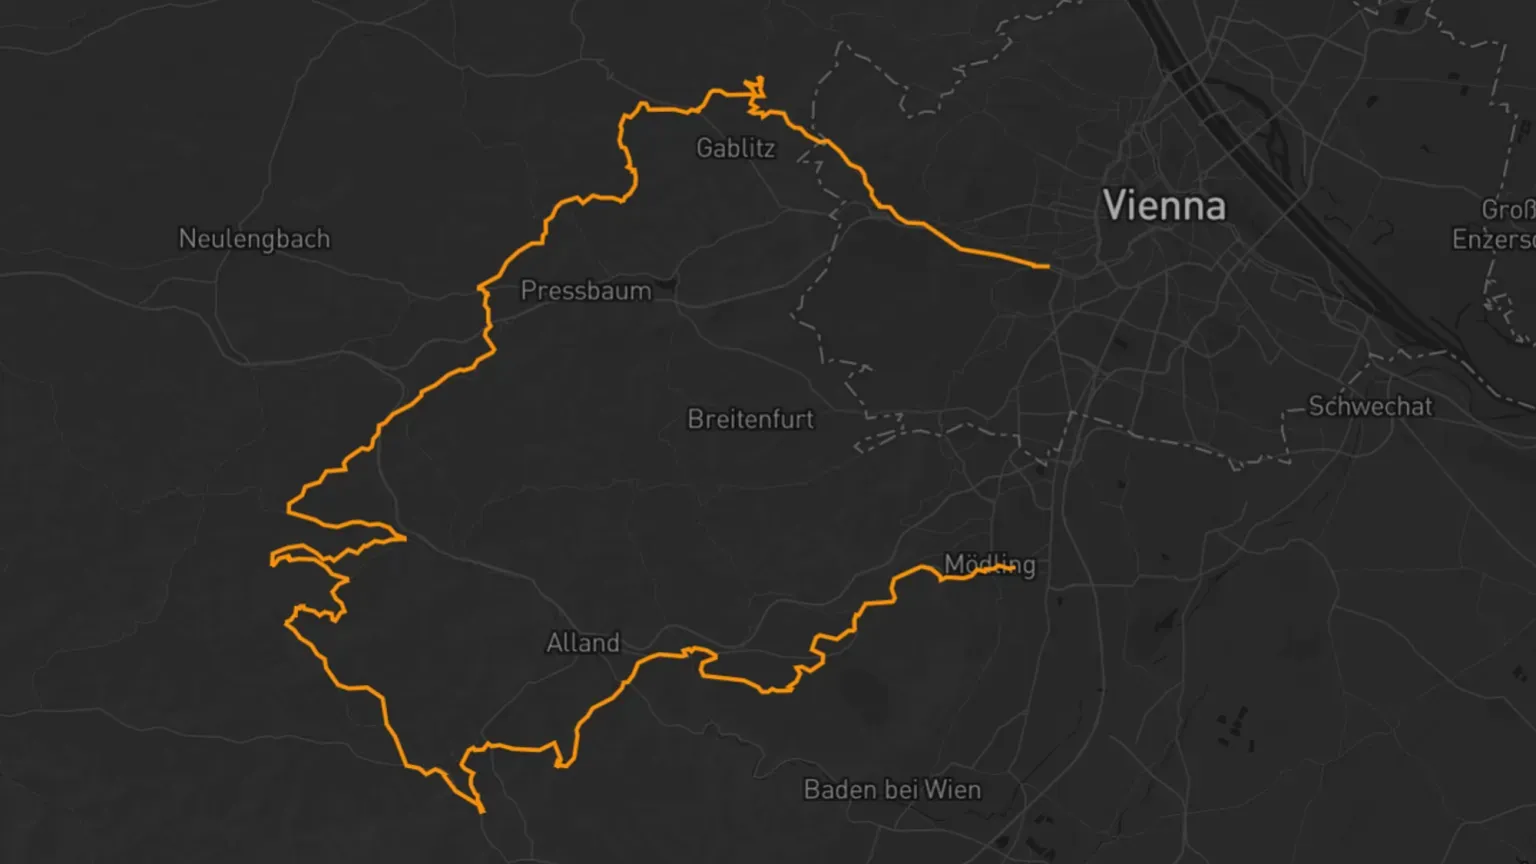 Brevet Nummer 2 auf der Karte von Wien Richtung Westen mit Wienerwald.